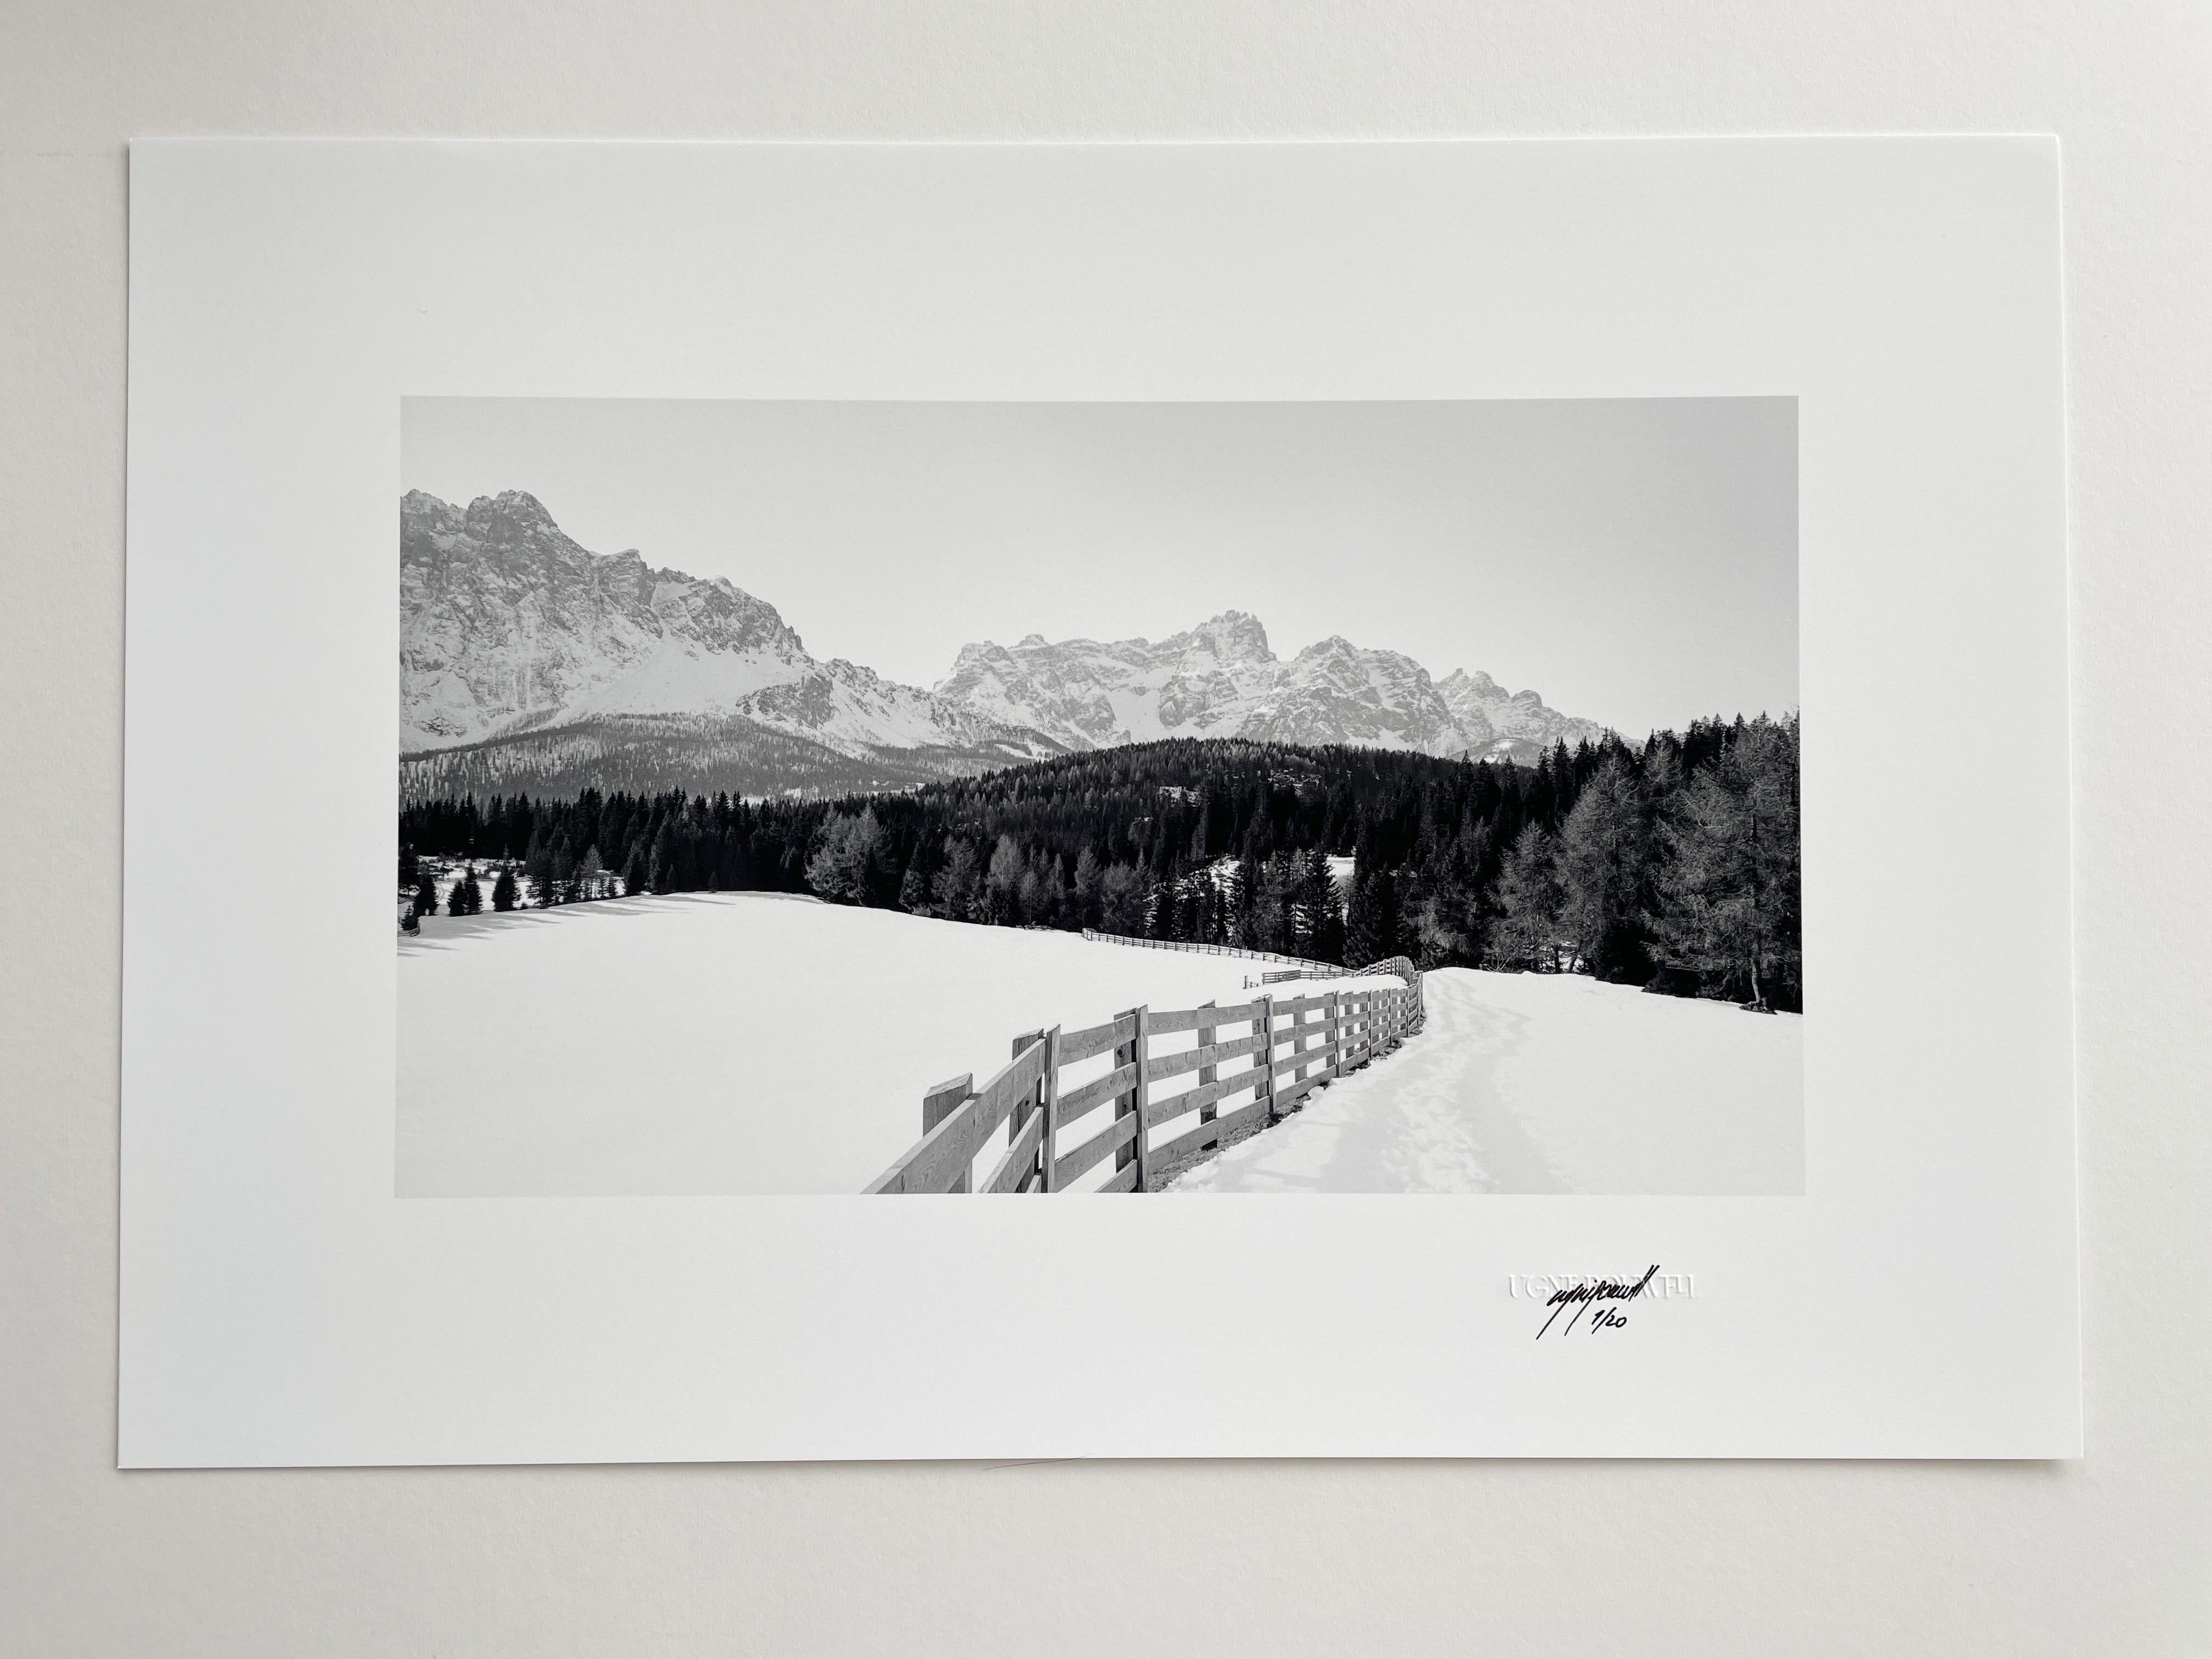 Dolomites n°2, 2024

Il s'agit d'une photographie argentique en noir et blanc des Dolomites, réalisée à l'aide d'un appareil photo grand format 4x5 Linhof. Ugne Pouwell s'occupe du traitement et de l'impression dans le Studio.

Tiré à 20